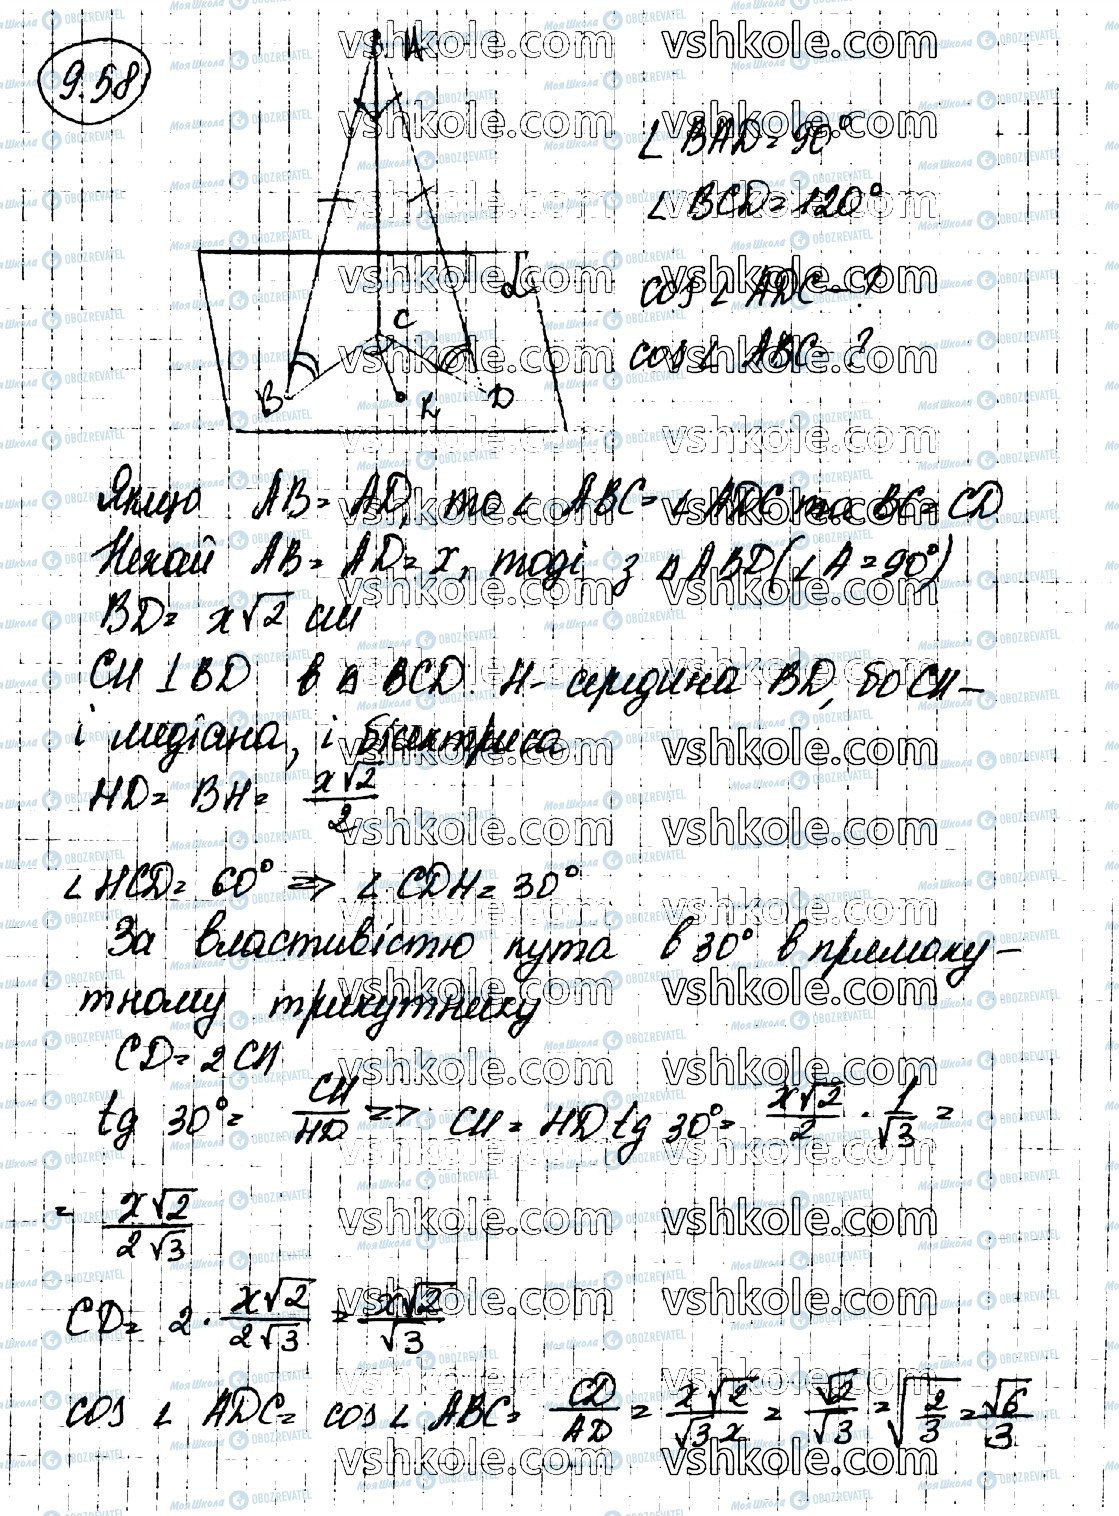 ГДЗ Геометрия 10 класс страница 58